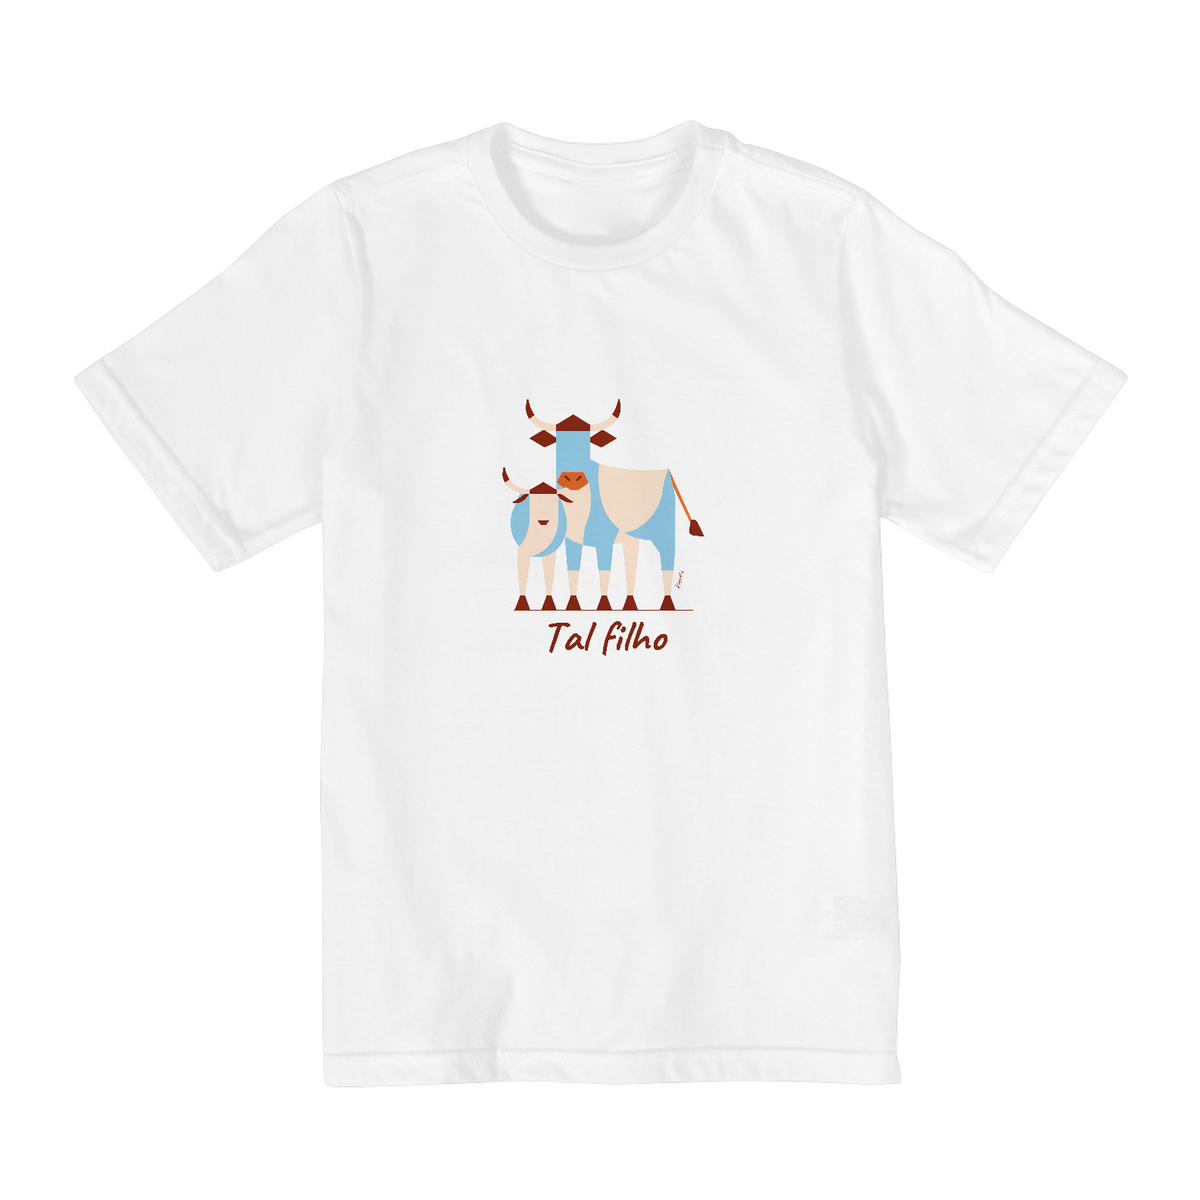 Nome do produto: Camiseta Tal filho - Infantil de 2 a 8A